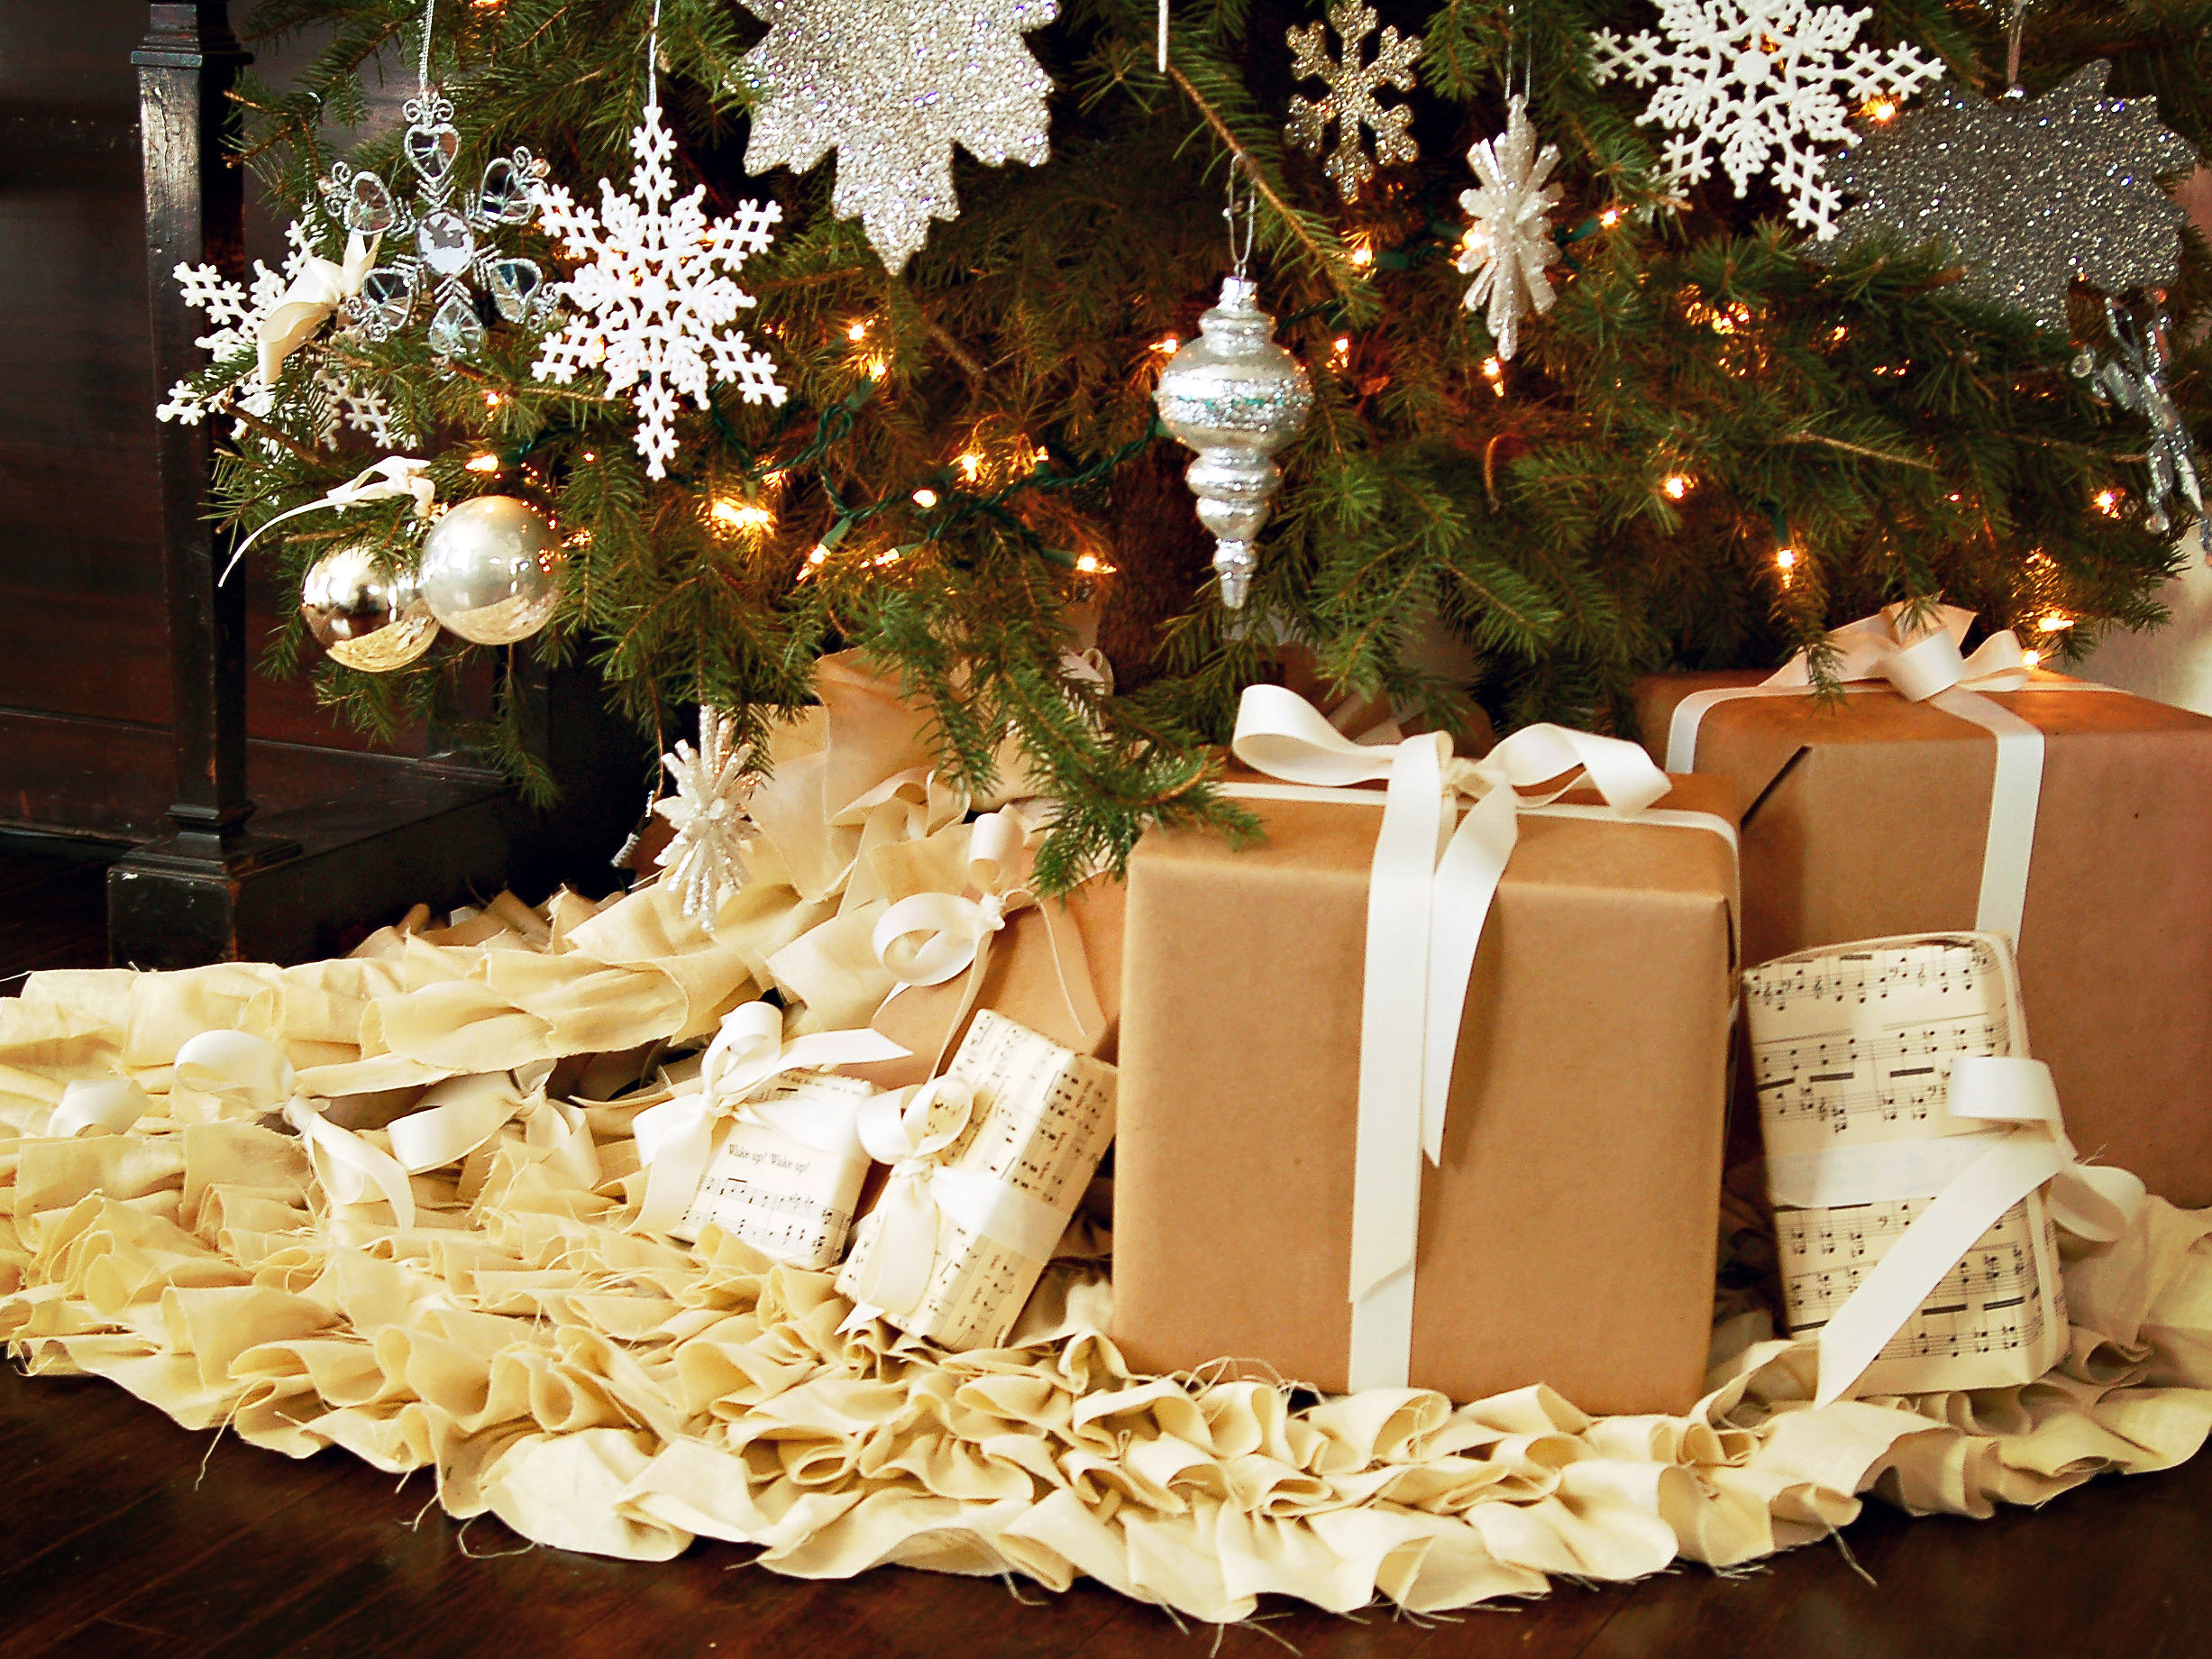 Украсить елку подарками. Подарки под ёлкой. Рождественские подарки. Новогодняя елка с подарками. Подарочки под елочкой.